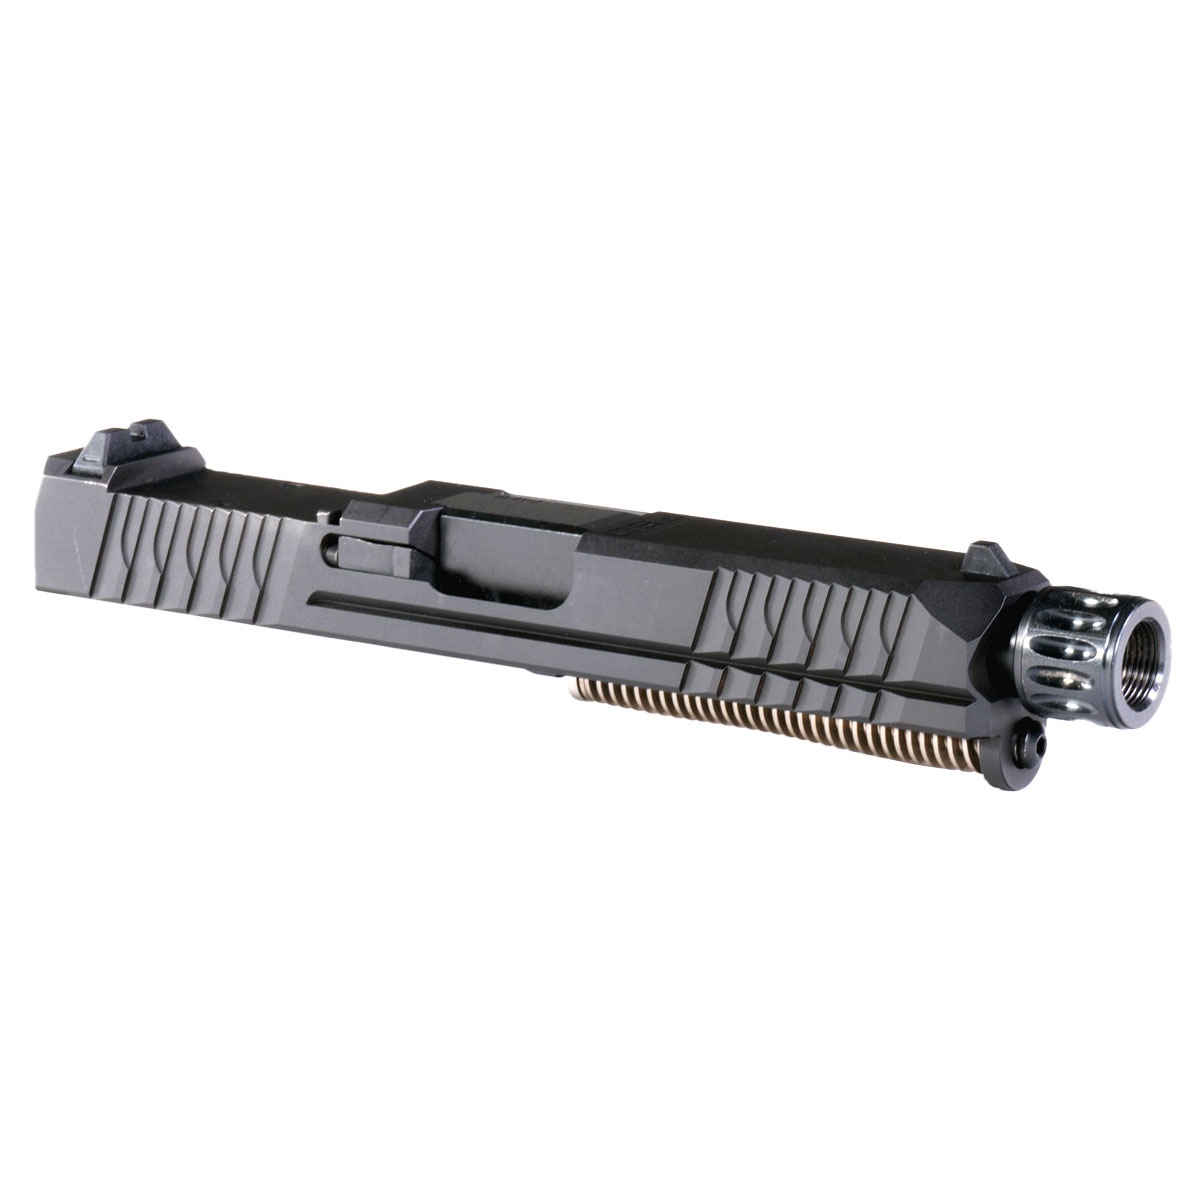 DTT 'Skellur Skellur' 9mm Complete Slide Kit - Glock 19 Gen 1-3 Compatible
